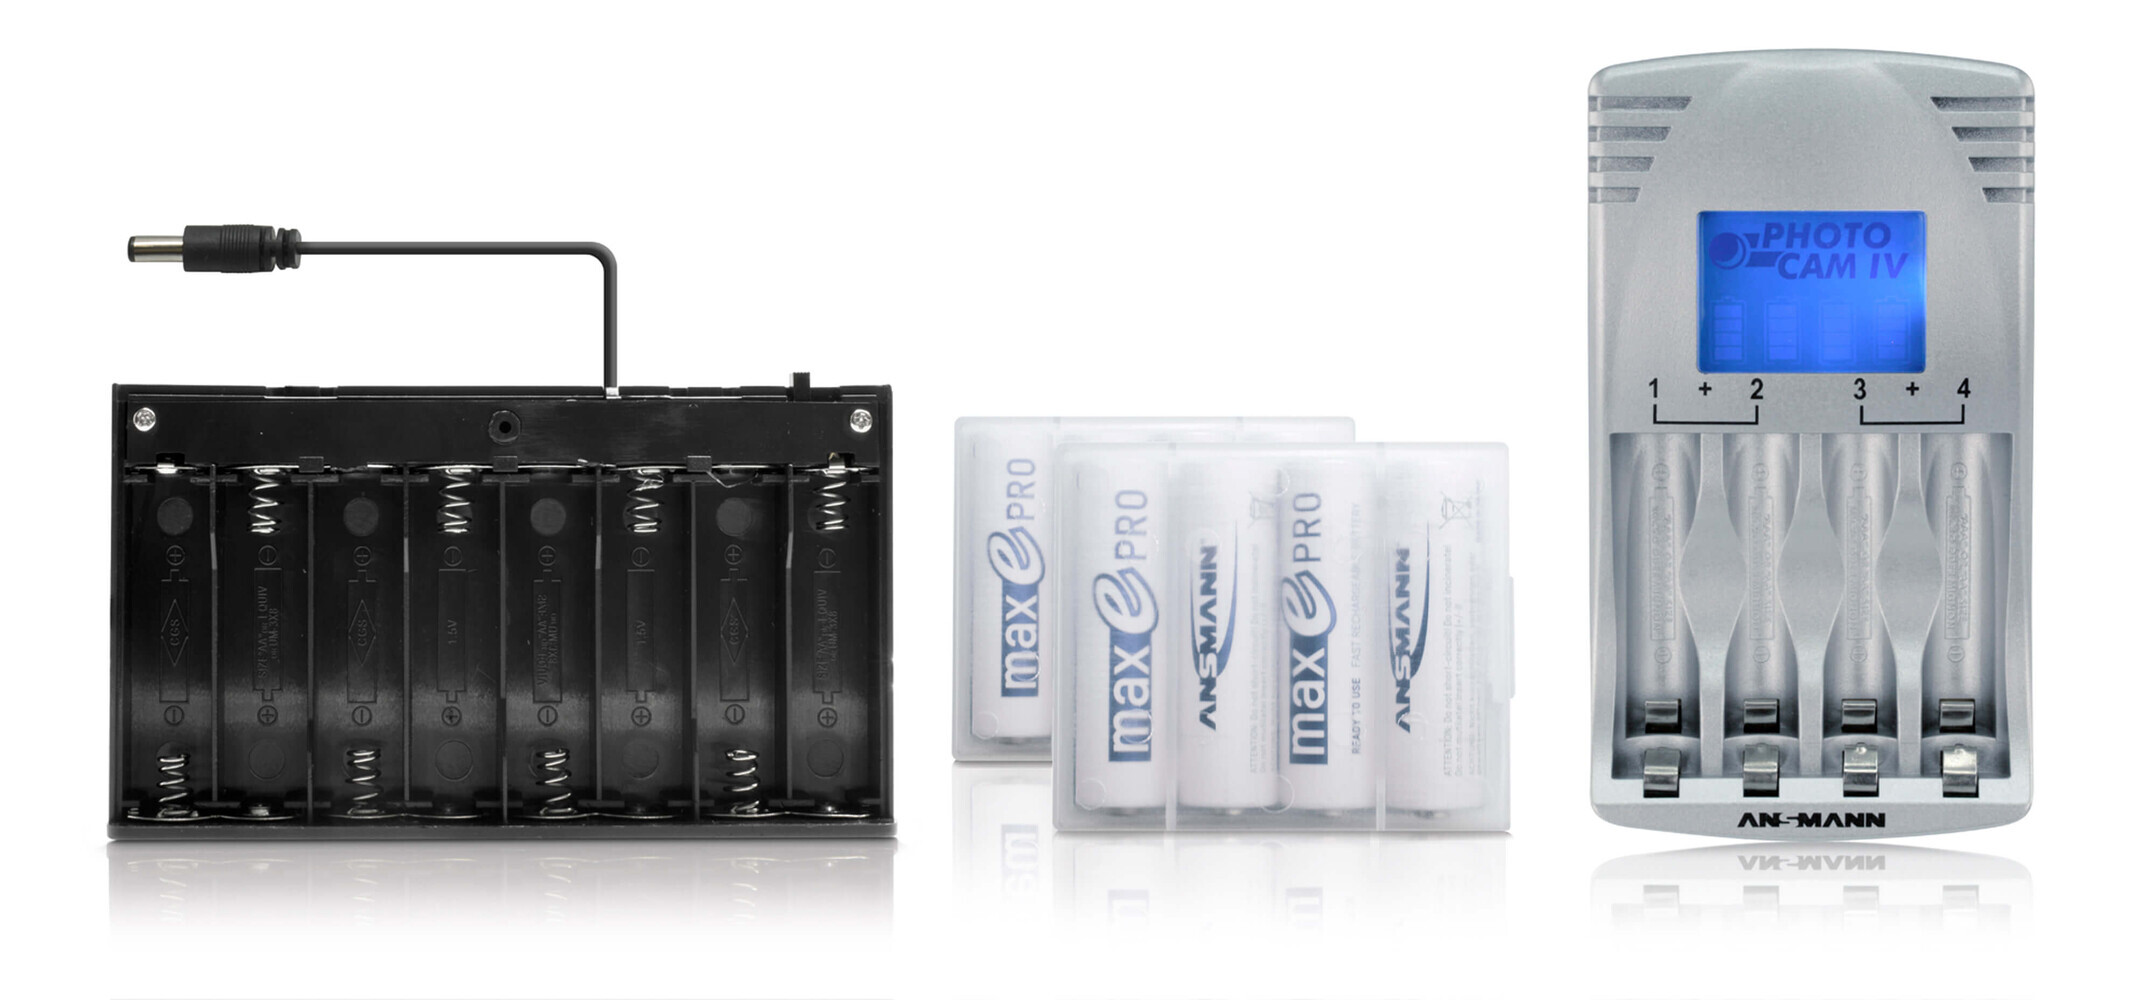 LED Universum von NA - Batteriebox für mobile LED Anwendungen mit Batterien, praktisch und mobil